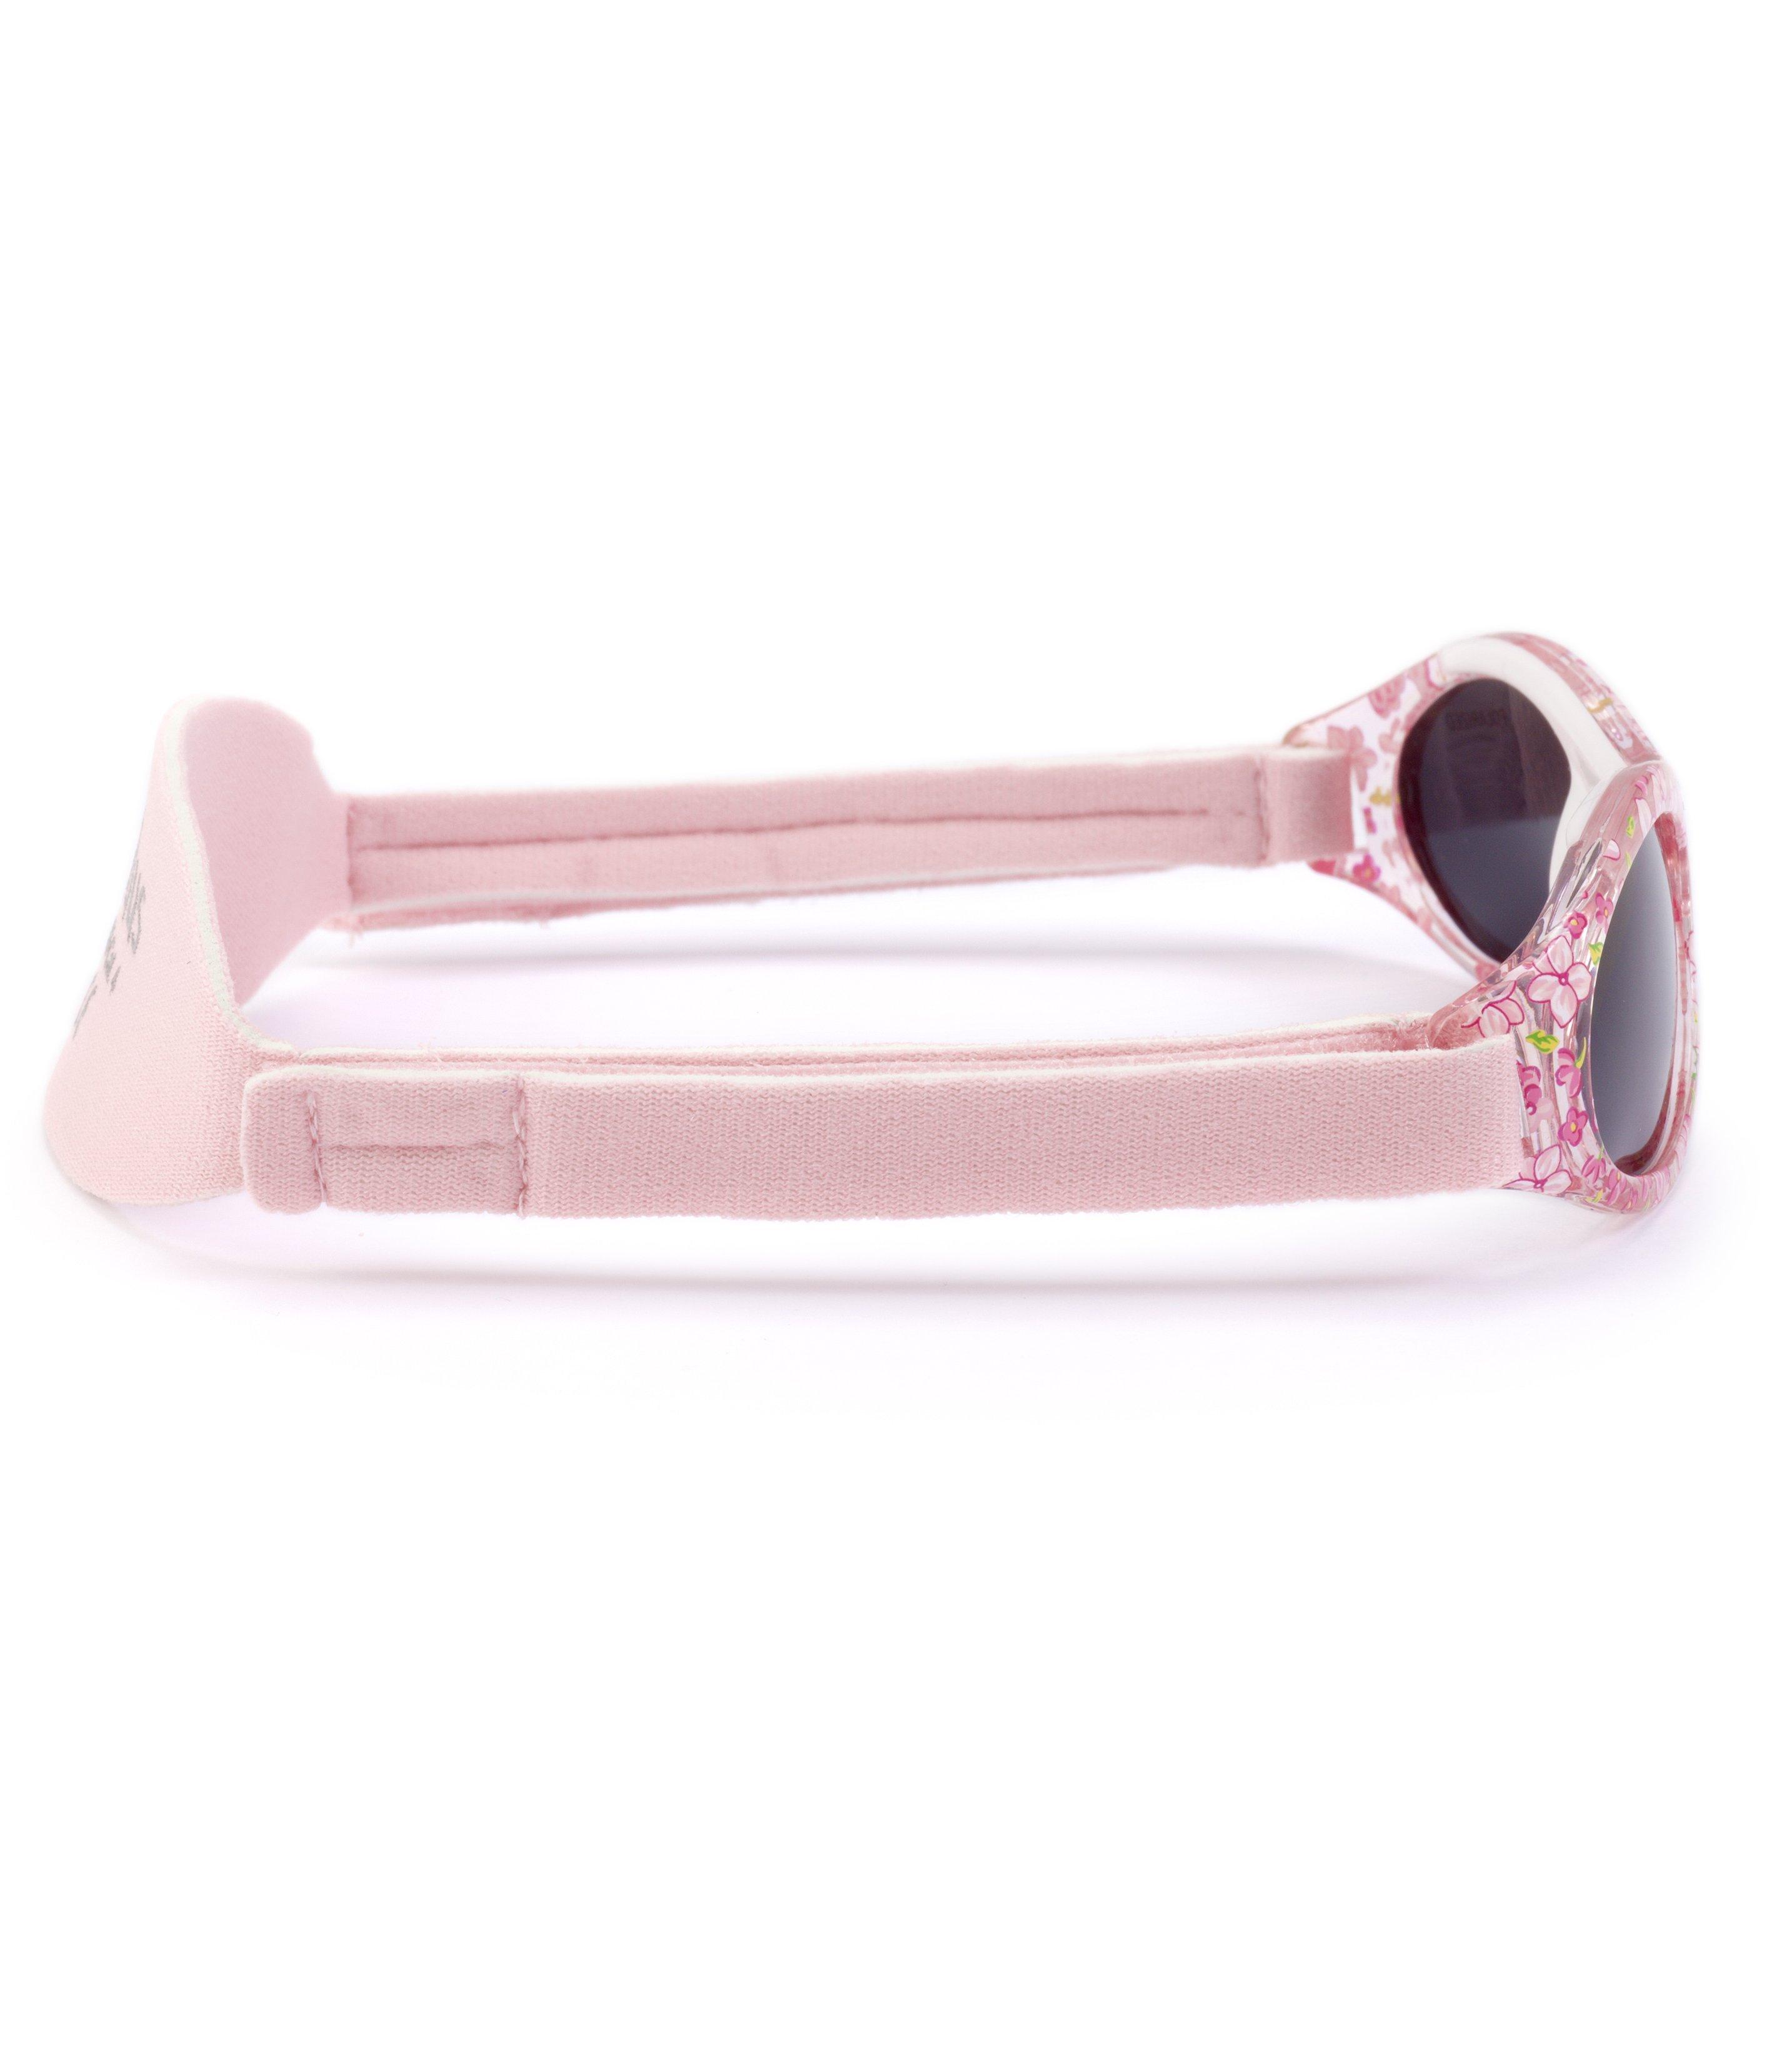 Kiddus  Baby Premium Kindersonnenbrille Polarisiert (ab 0 Monaten) 